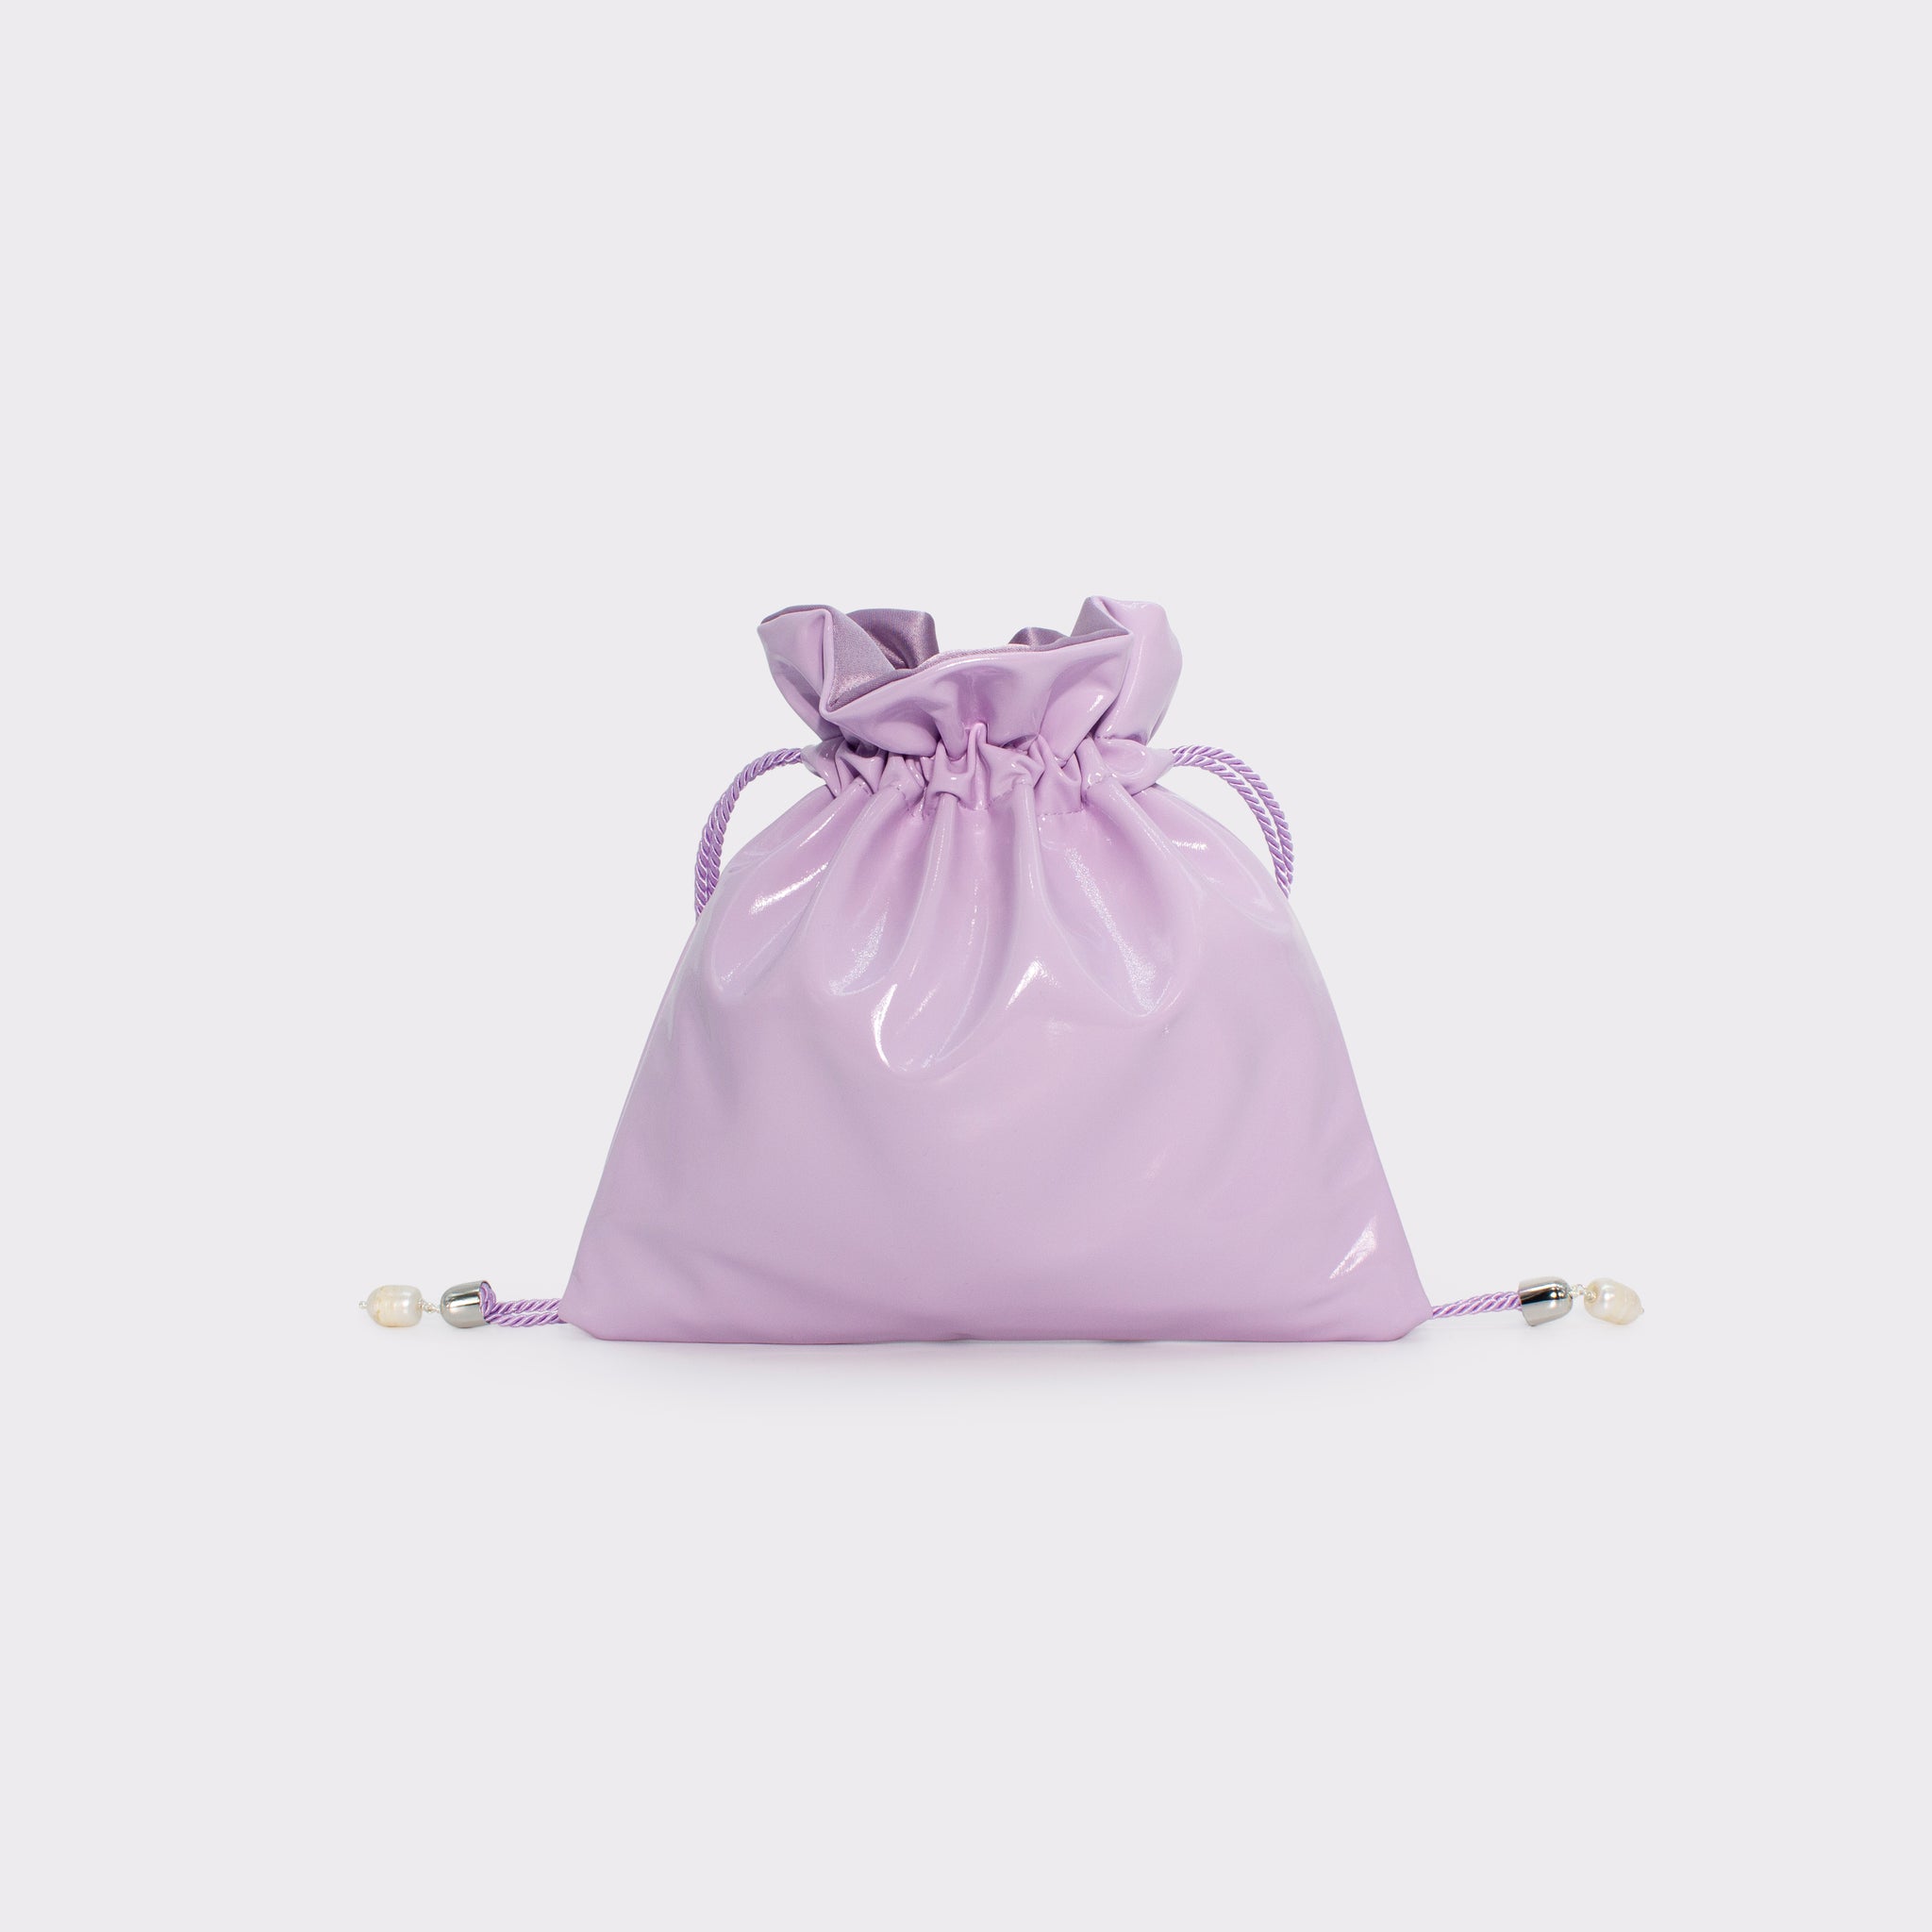 Glossy mini bag in colorazione orchid bloom